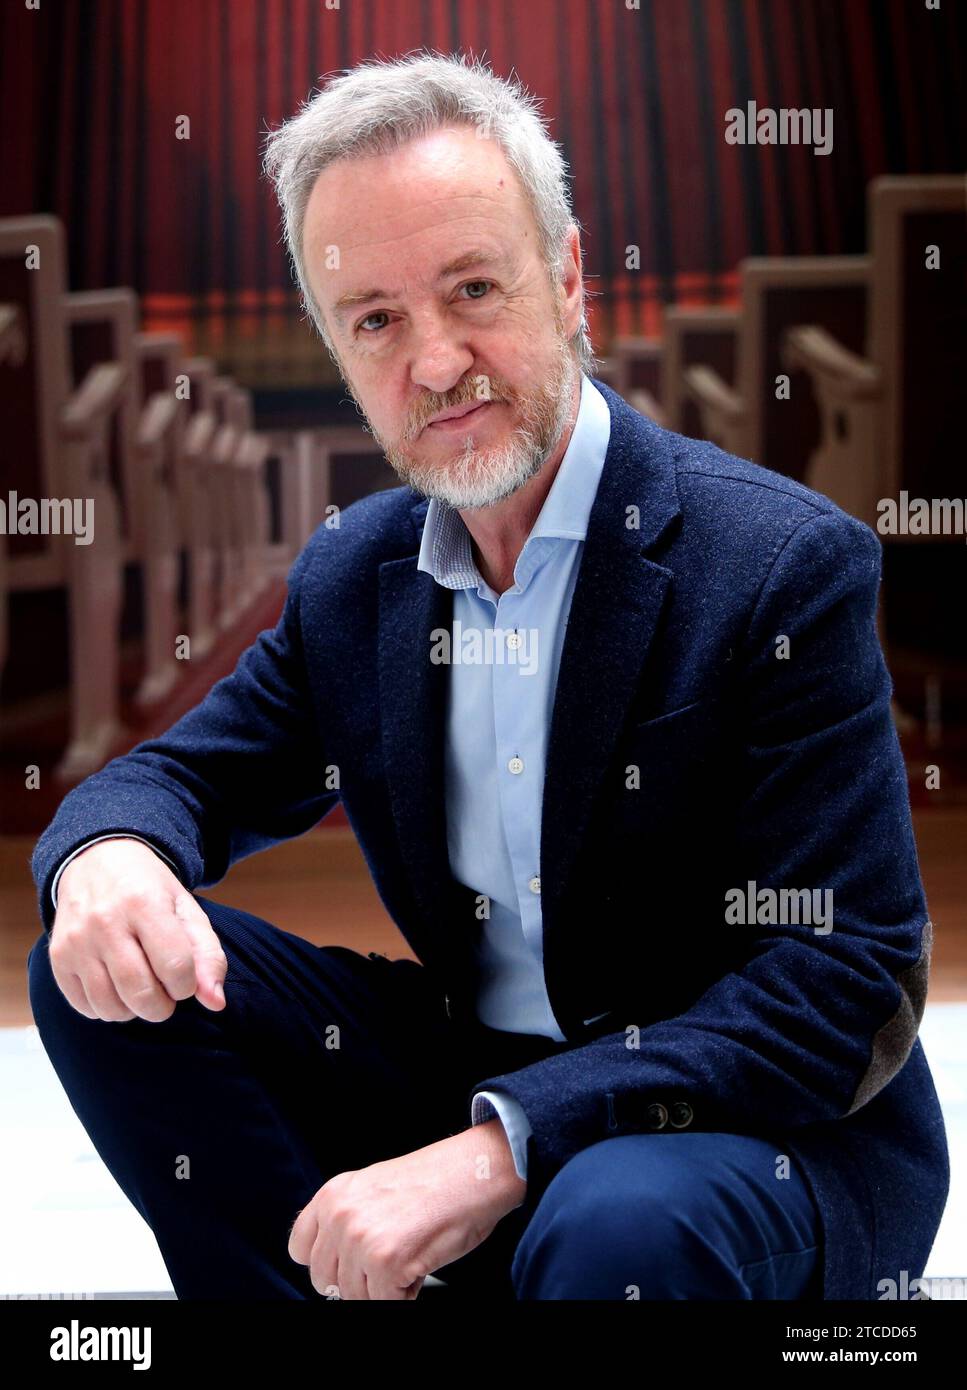 Madrid, 13.06.2018. Interview mit dem Schauspieler Carlos Hipólito. Foto: Ernesto Akut Archdc. Quelle: Album/Archivo ABC/Ernesto Agudo Stockfoto